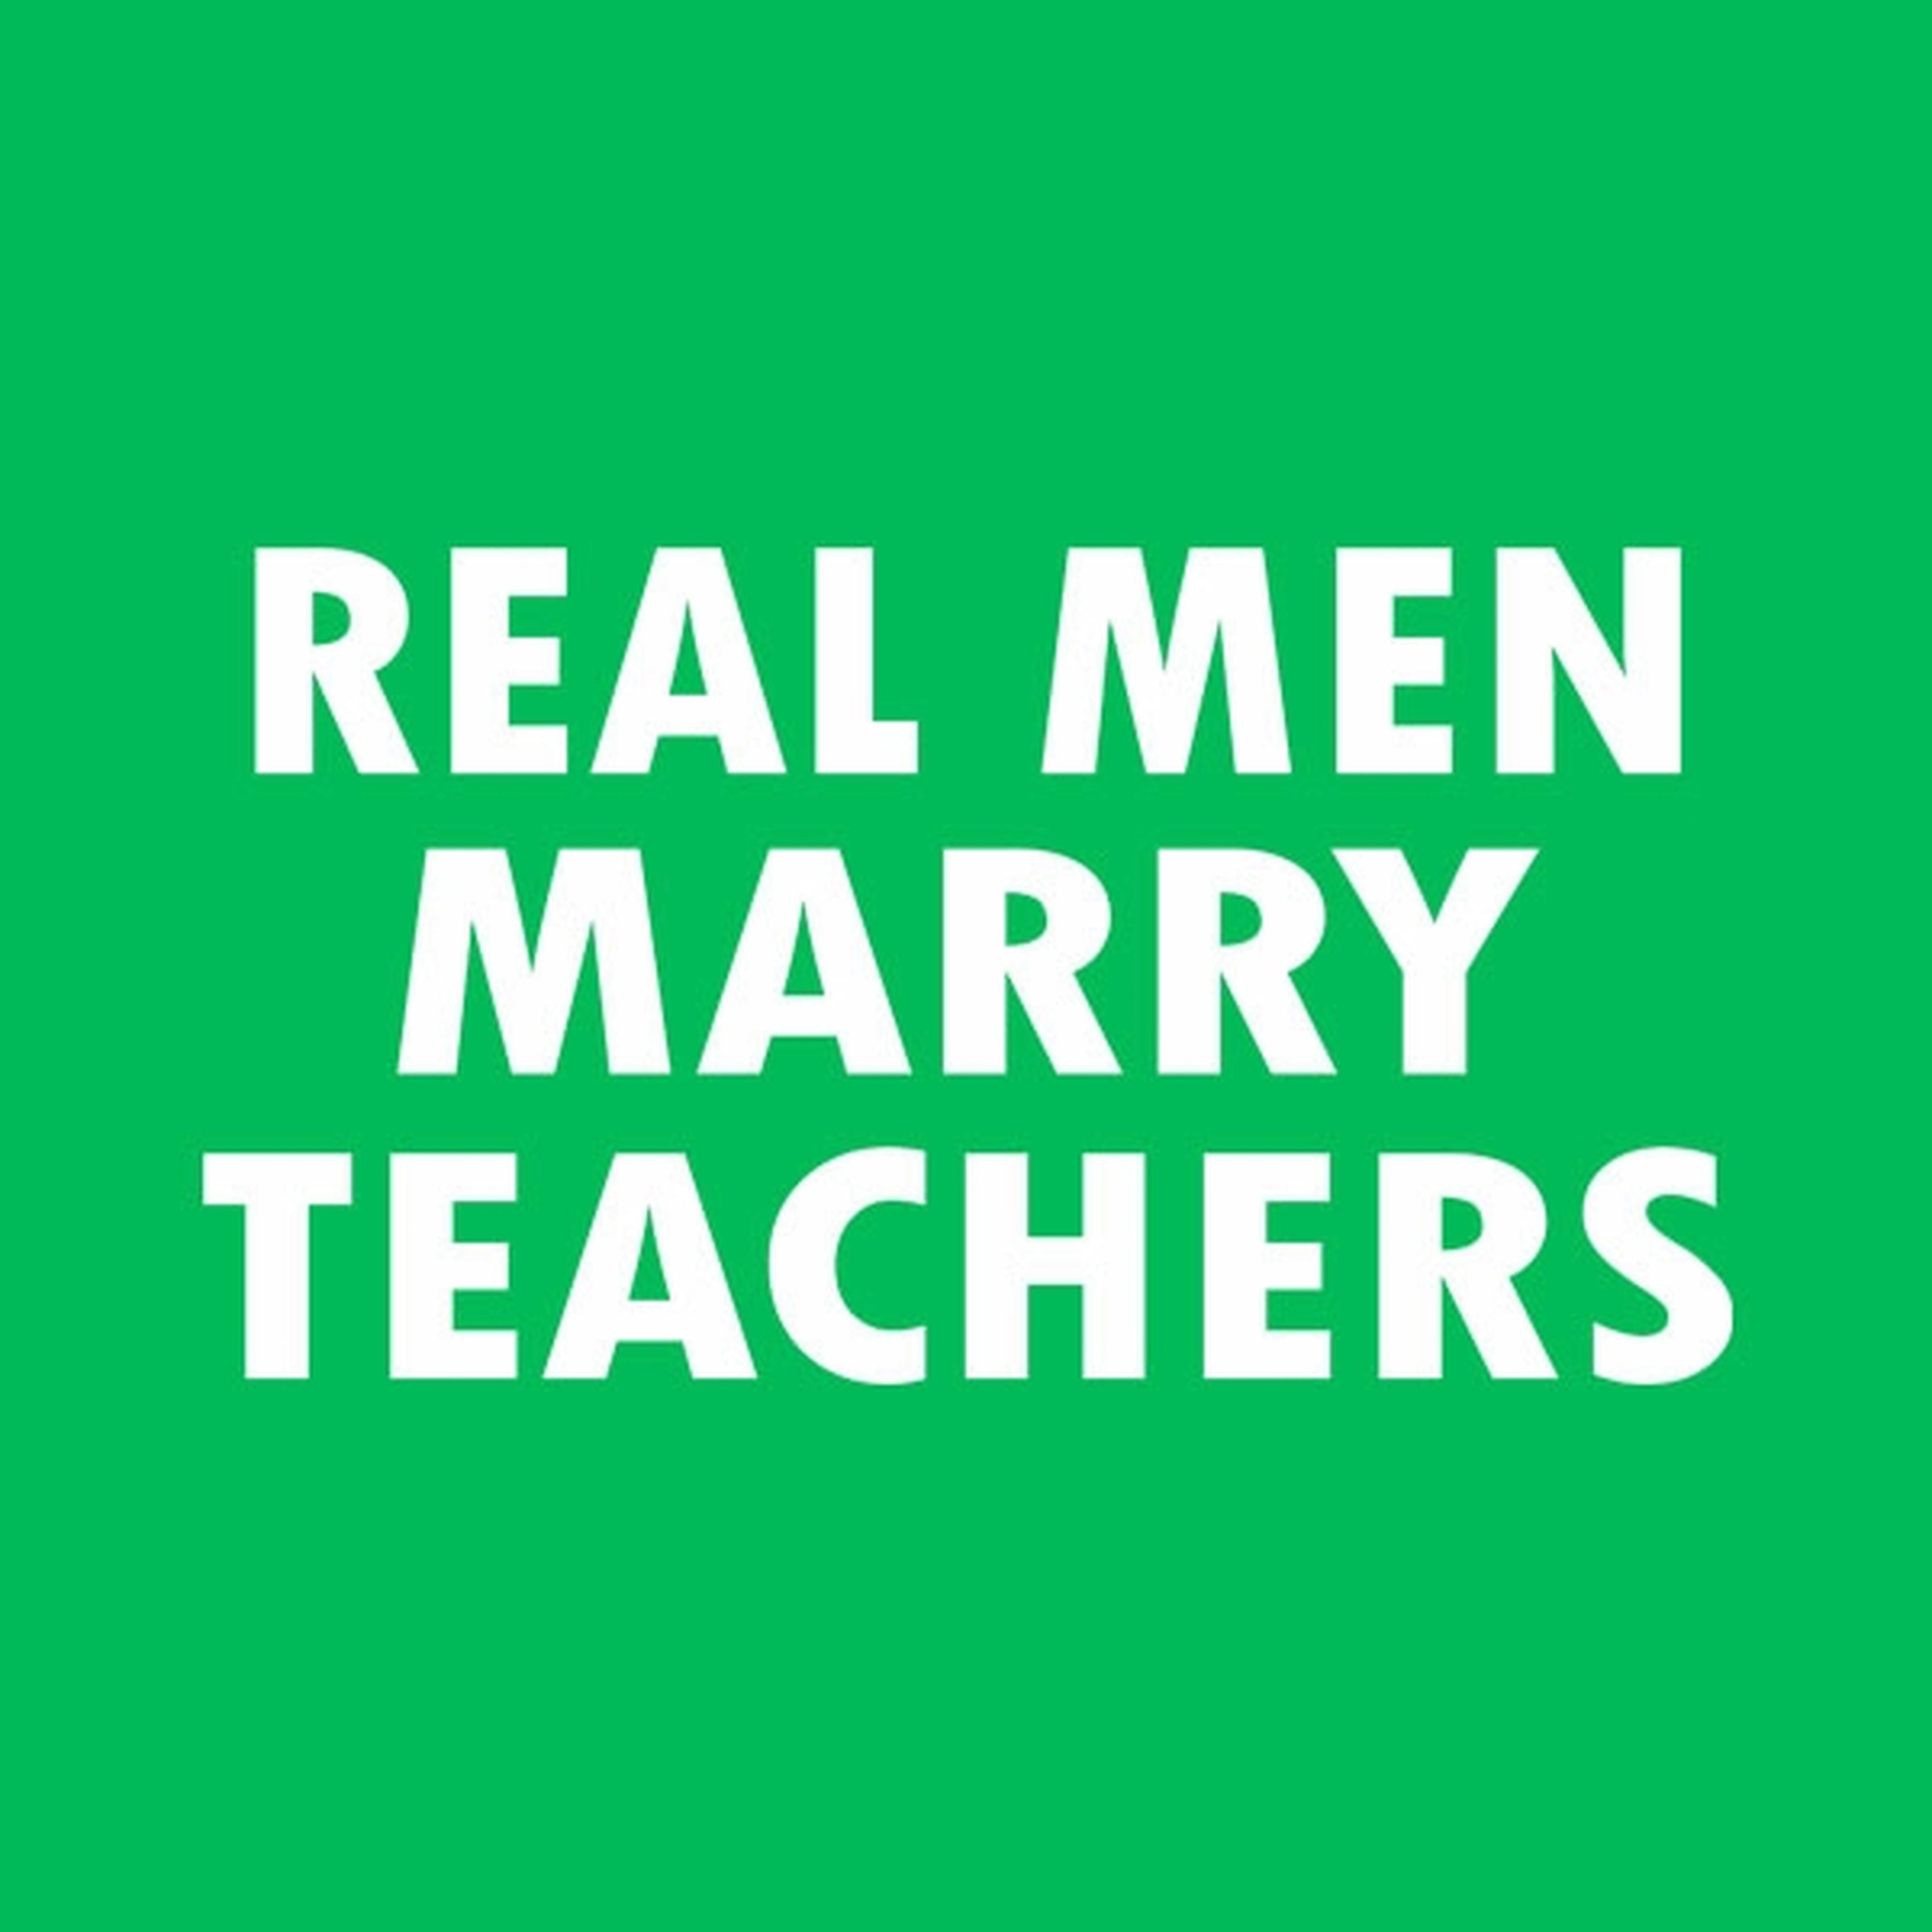 Real men marry teachers - T-shirt